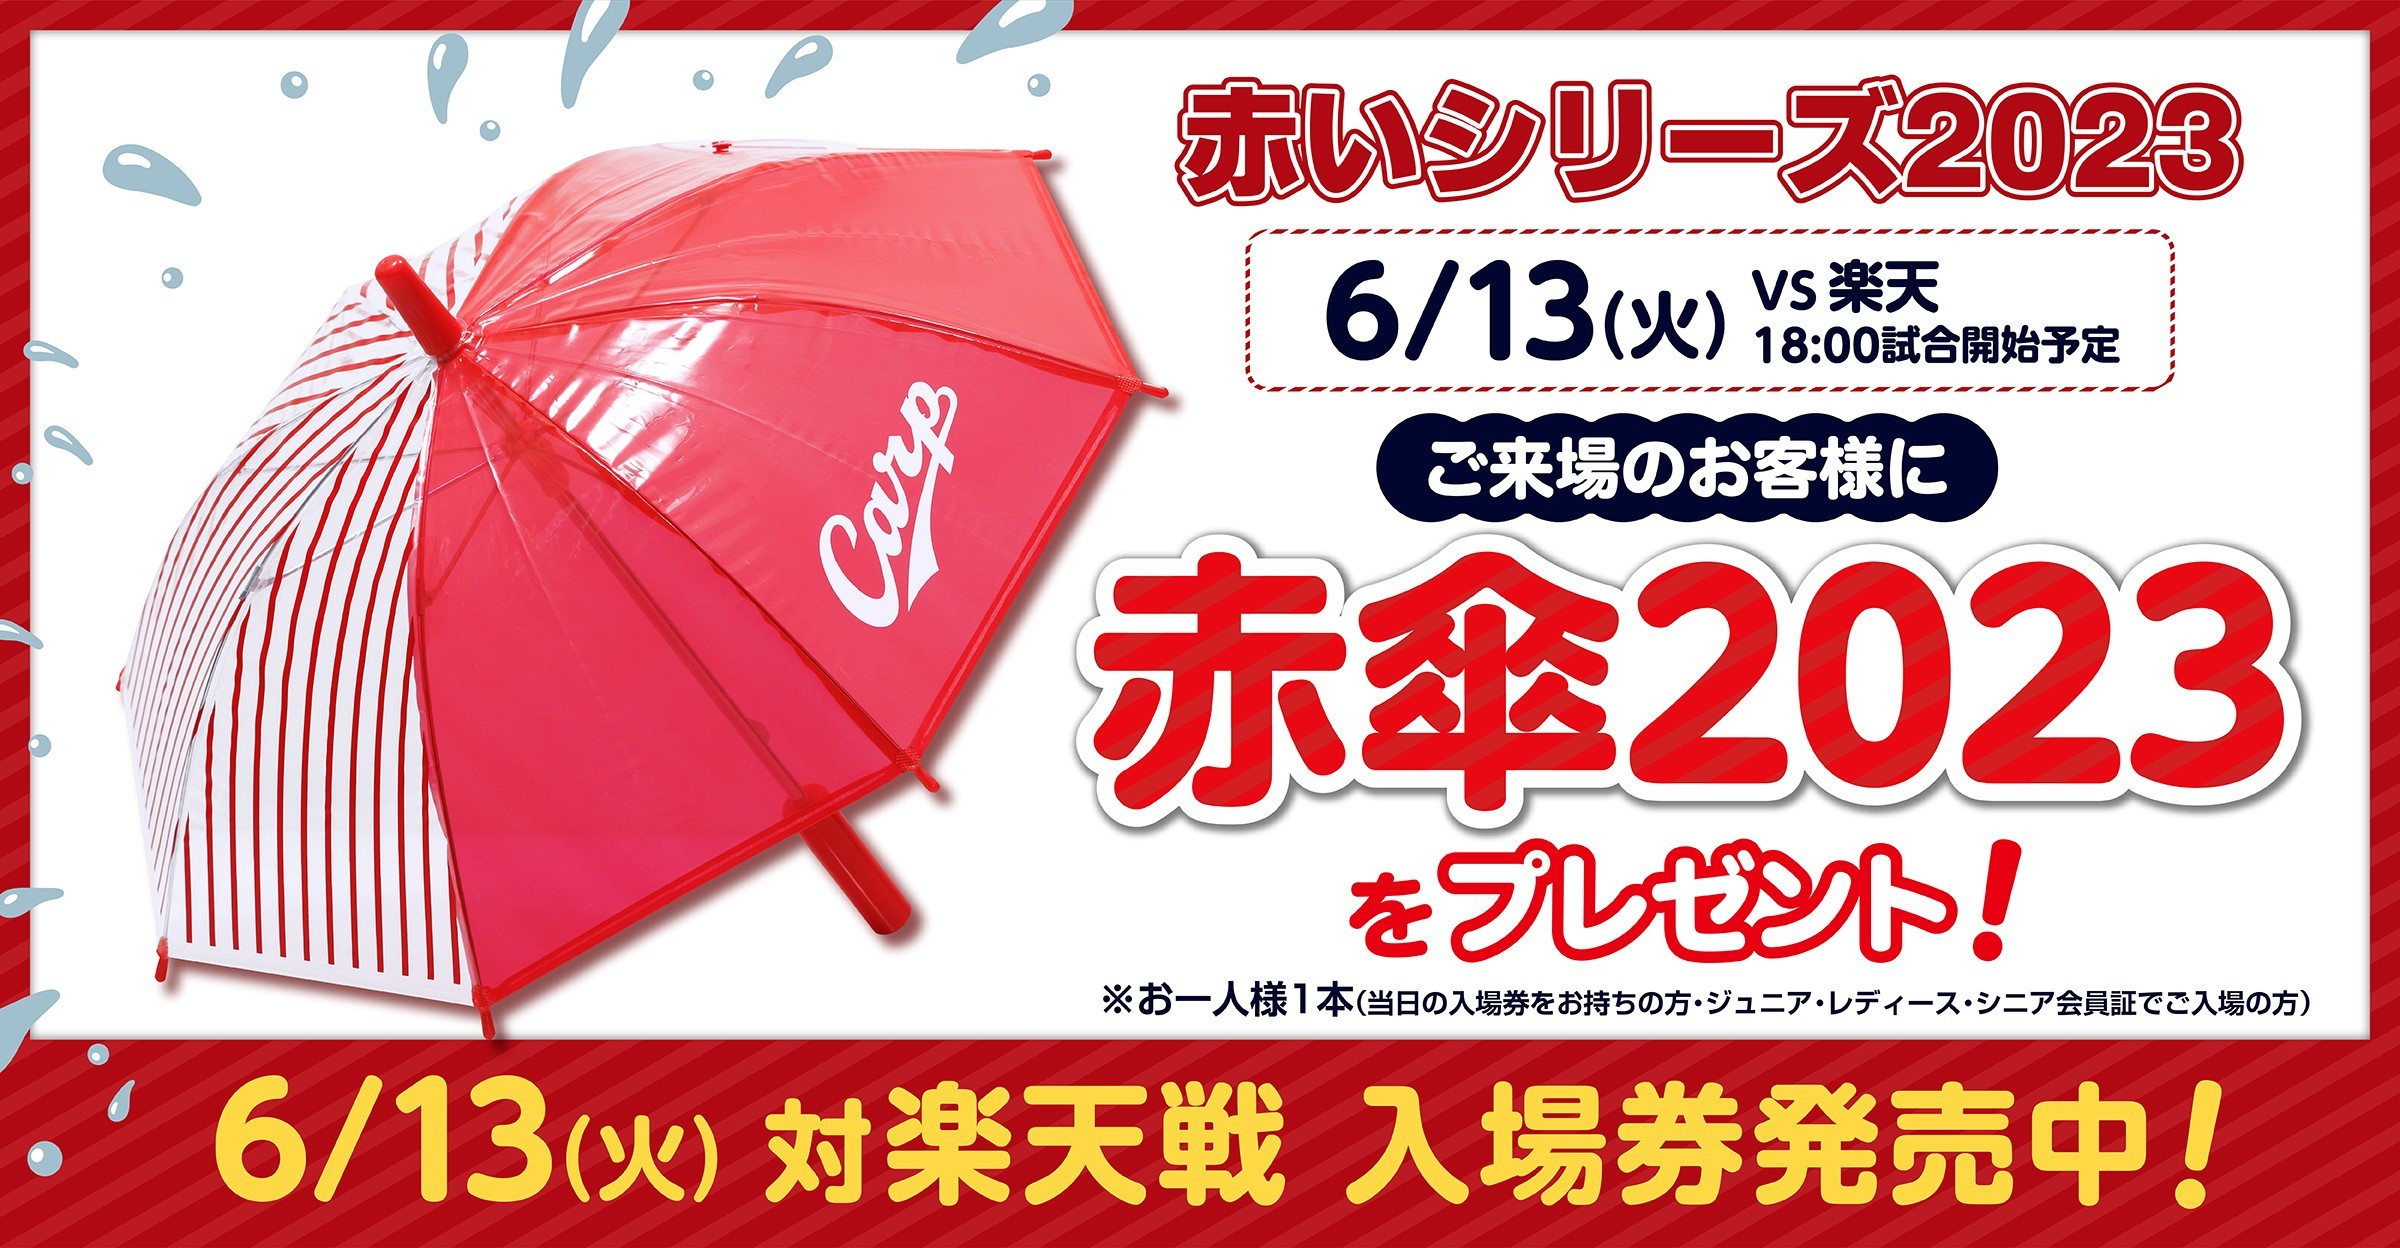 広島カープ 2023 赤 シリーズ 2023年6月13日 来場記念応援傘